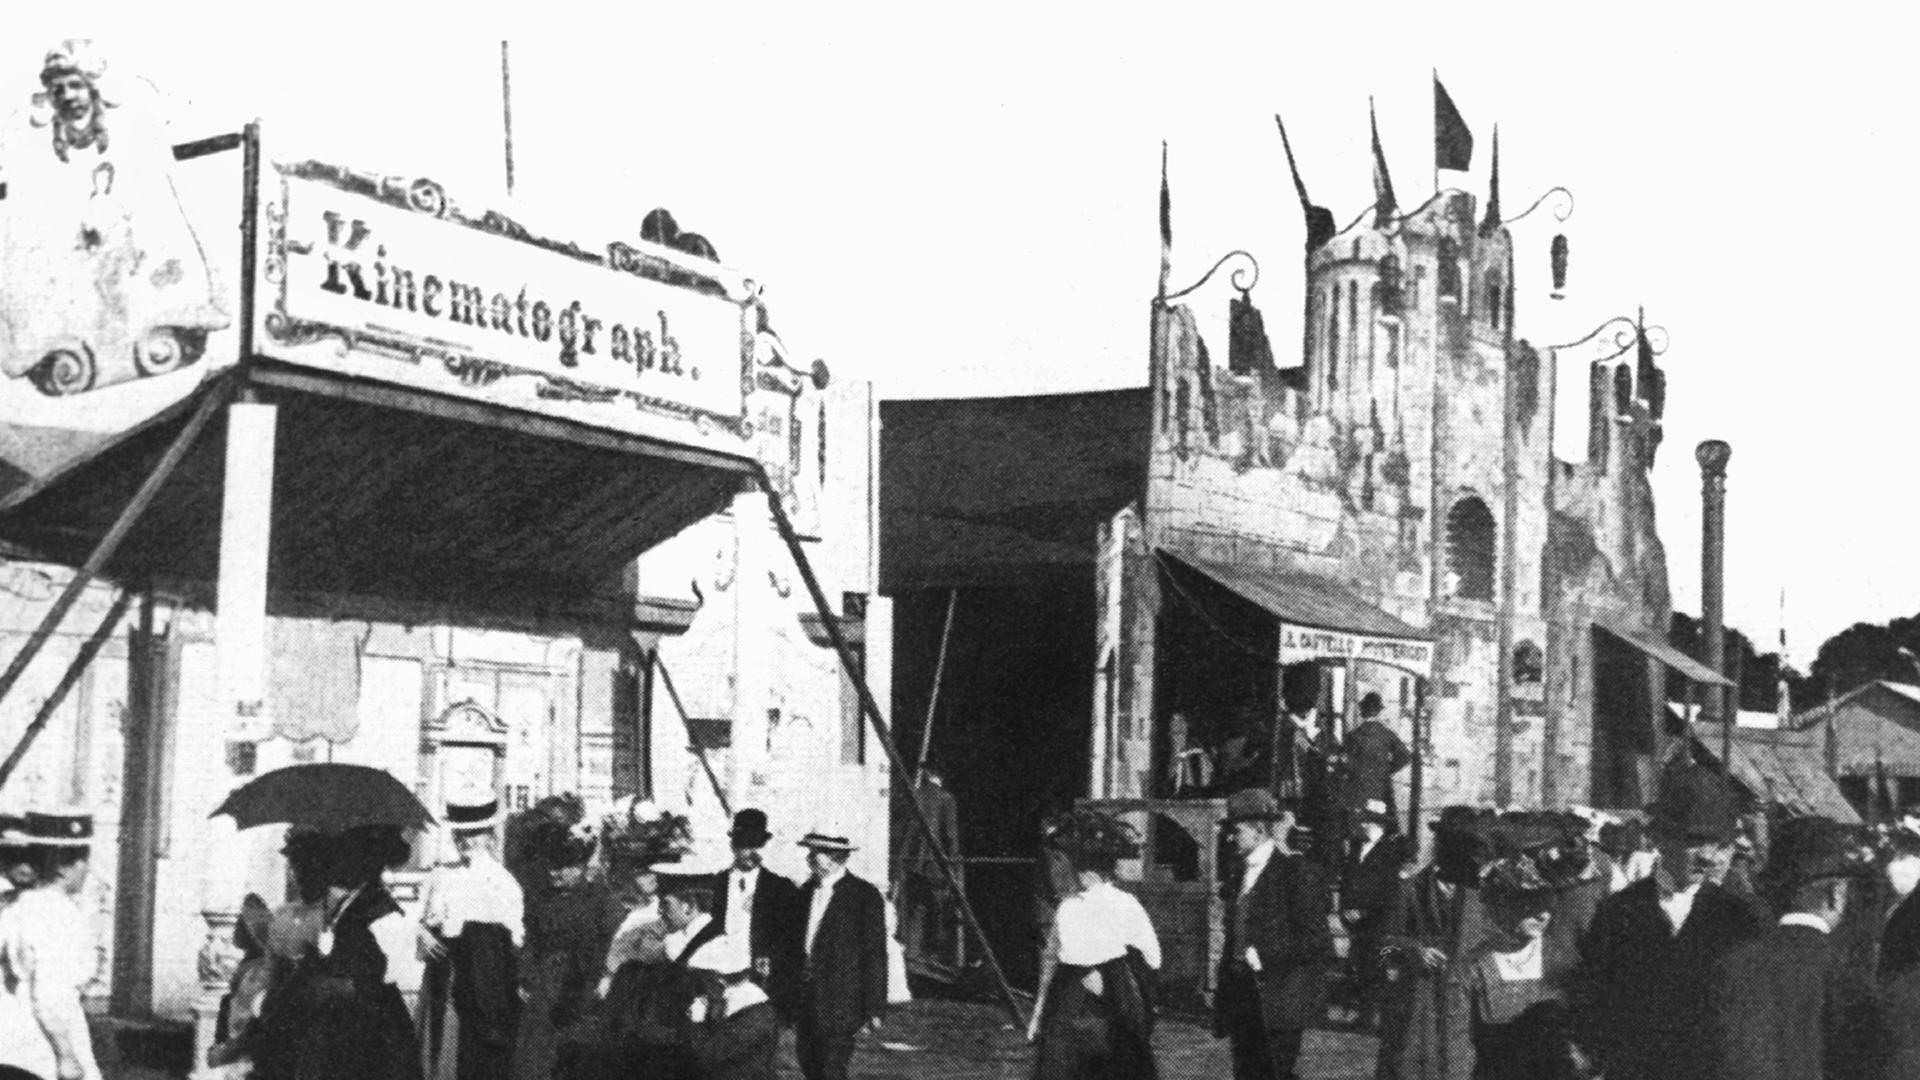 Im Jahr 1910: Auf einem Volksfest auf der Festwiese in Berlin-Schönholz steht ein Kinematograf - ein Vorläufer des Kinos - des Bioskop-Erfinders Max Sklaranowsky.